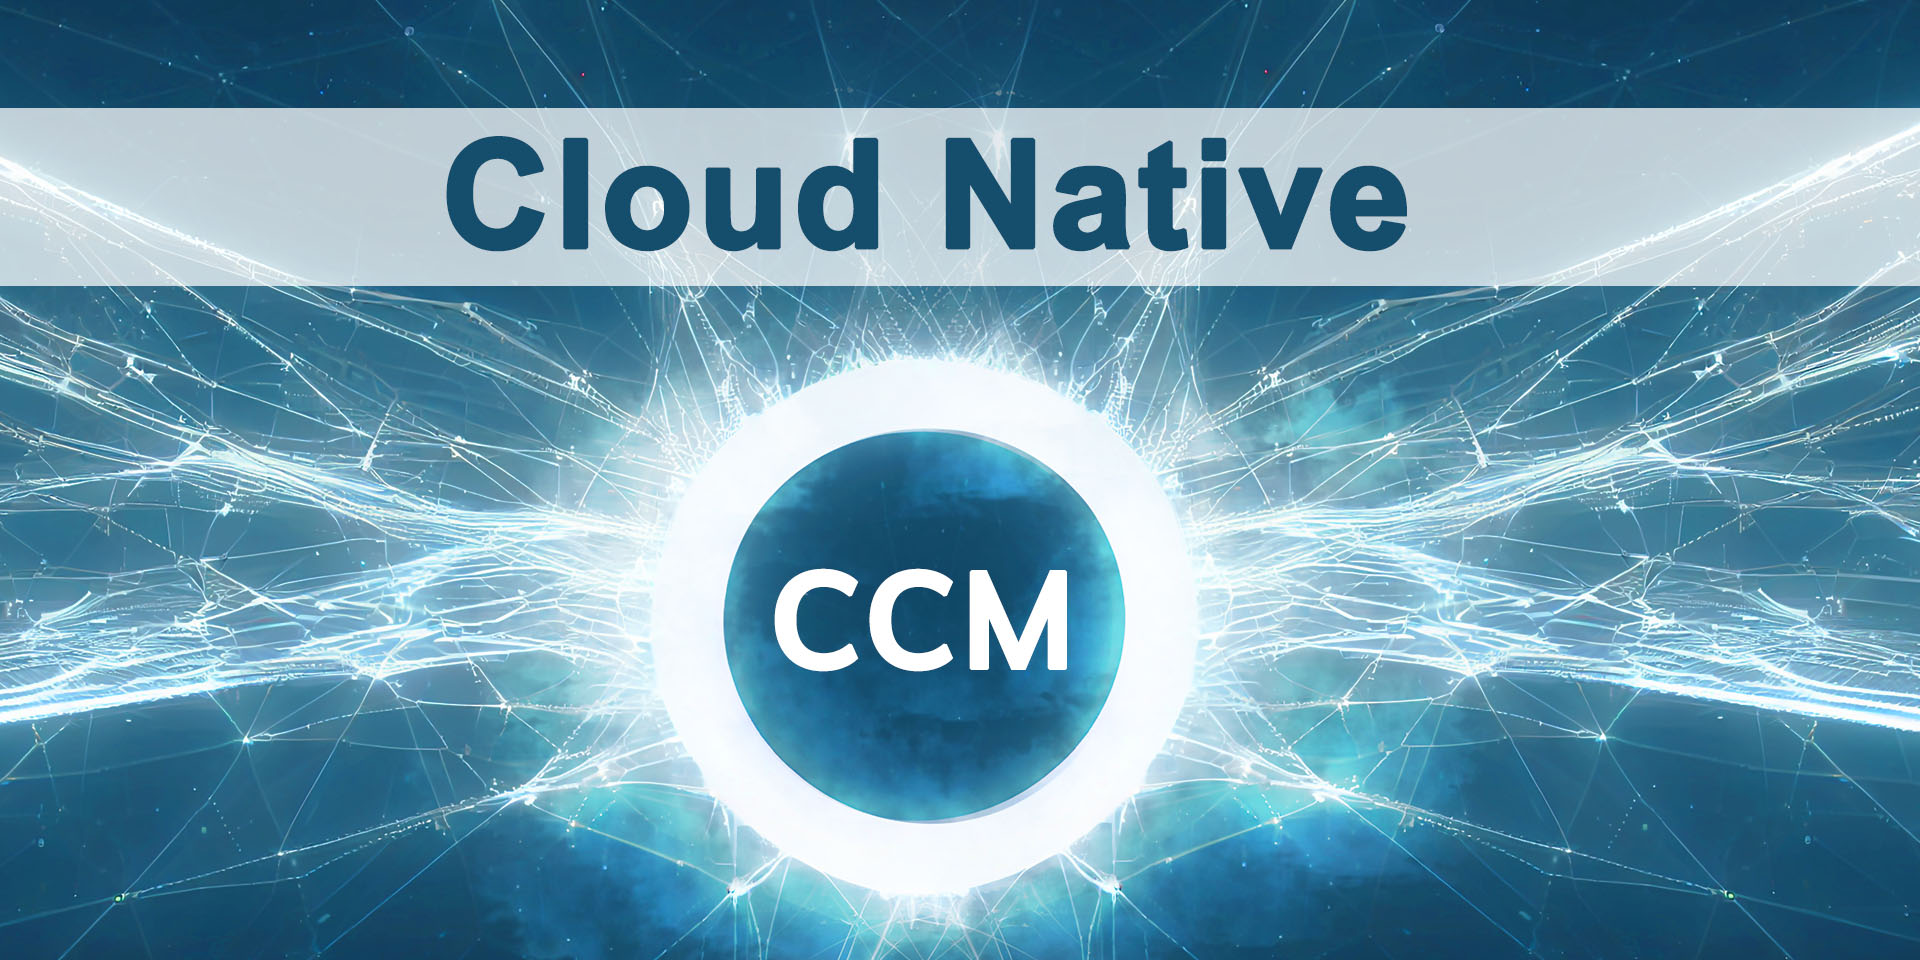 Hay una tendencia imparable de migrar incluso las aplicaciones críticas para el negocio a la nube o de crear soluciones nativas en la nube, incluido CCM nativo en la nube.